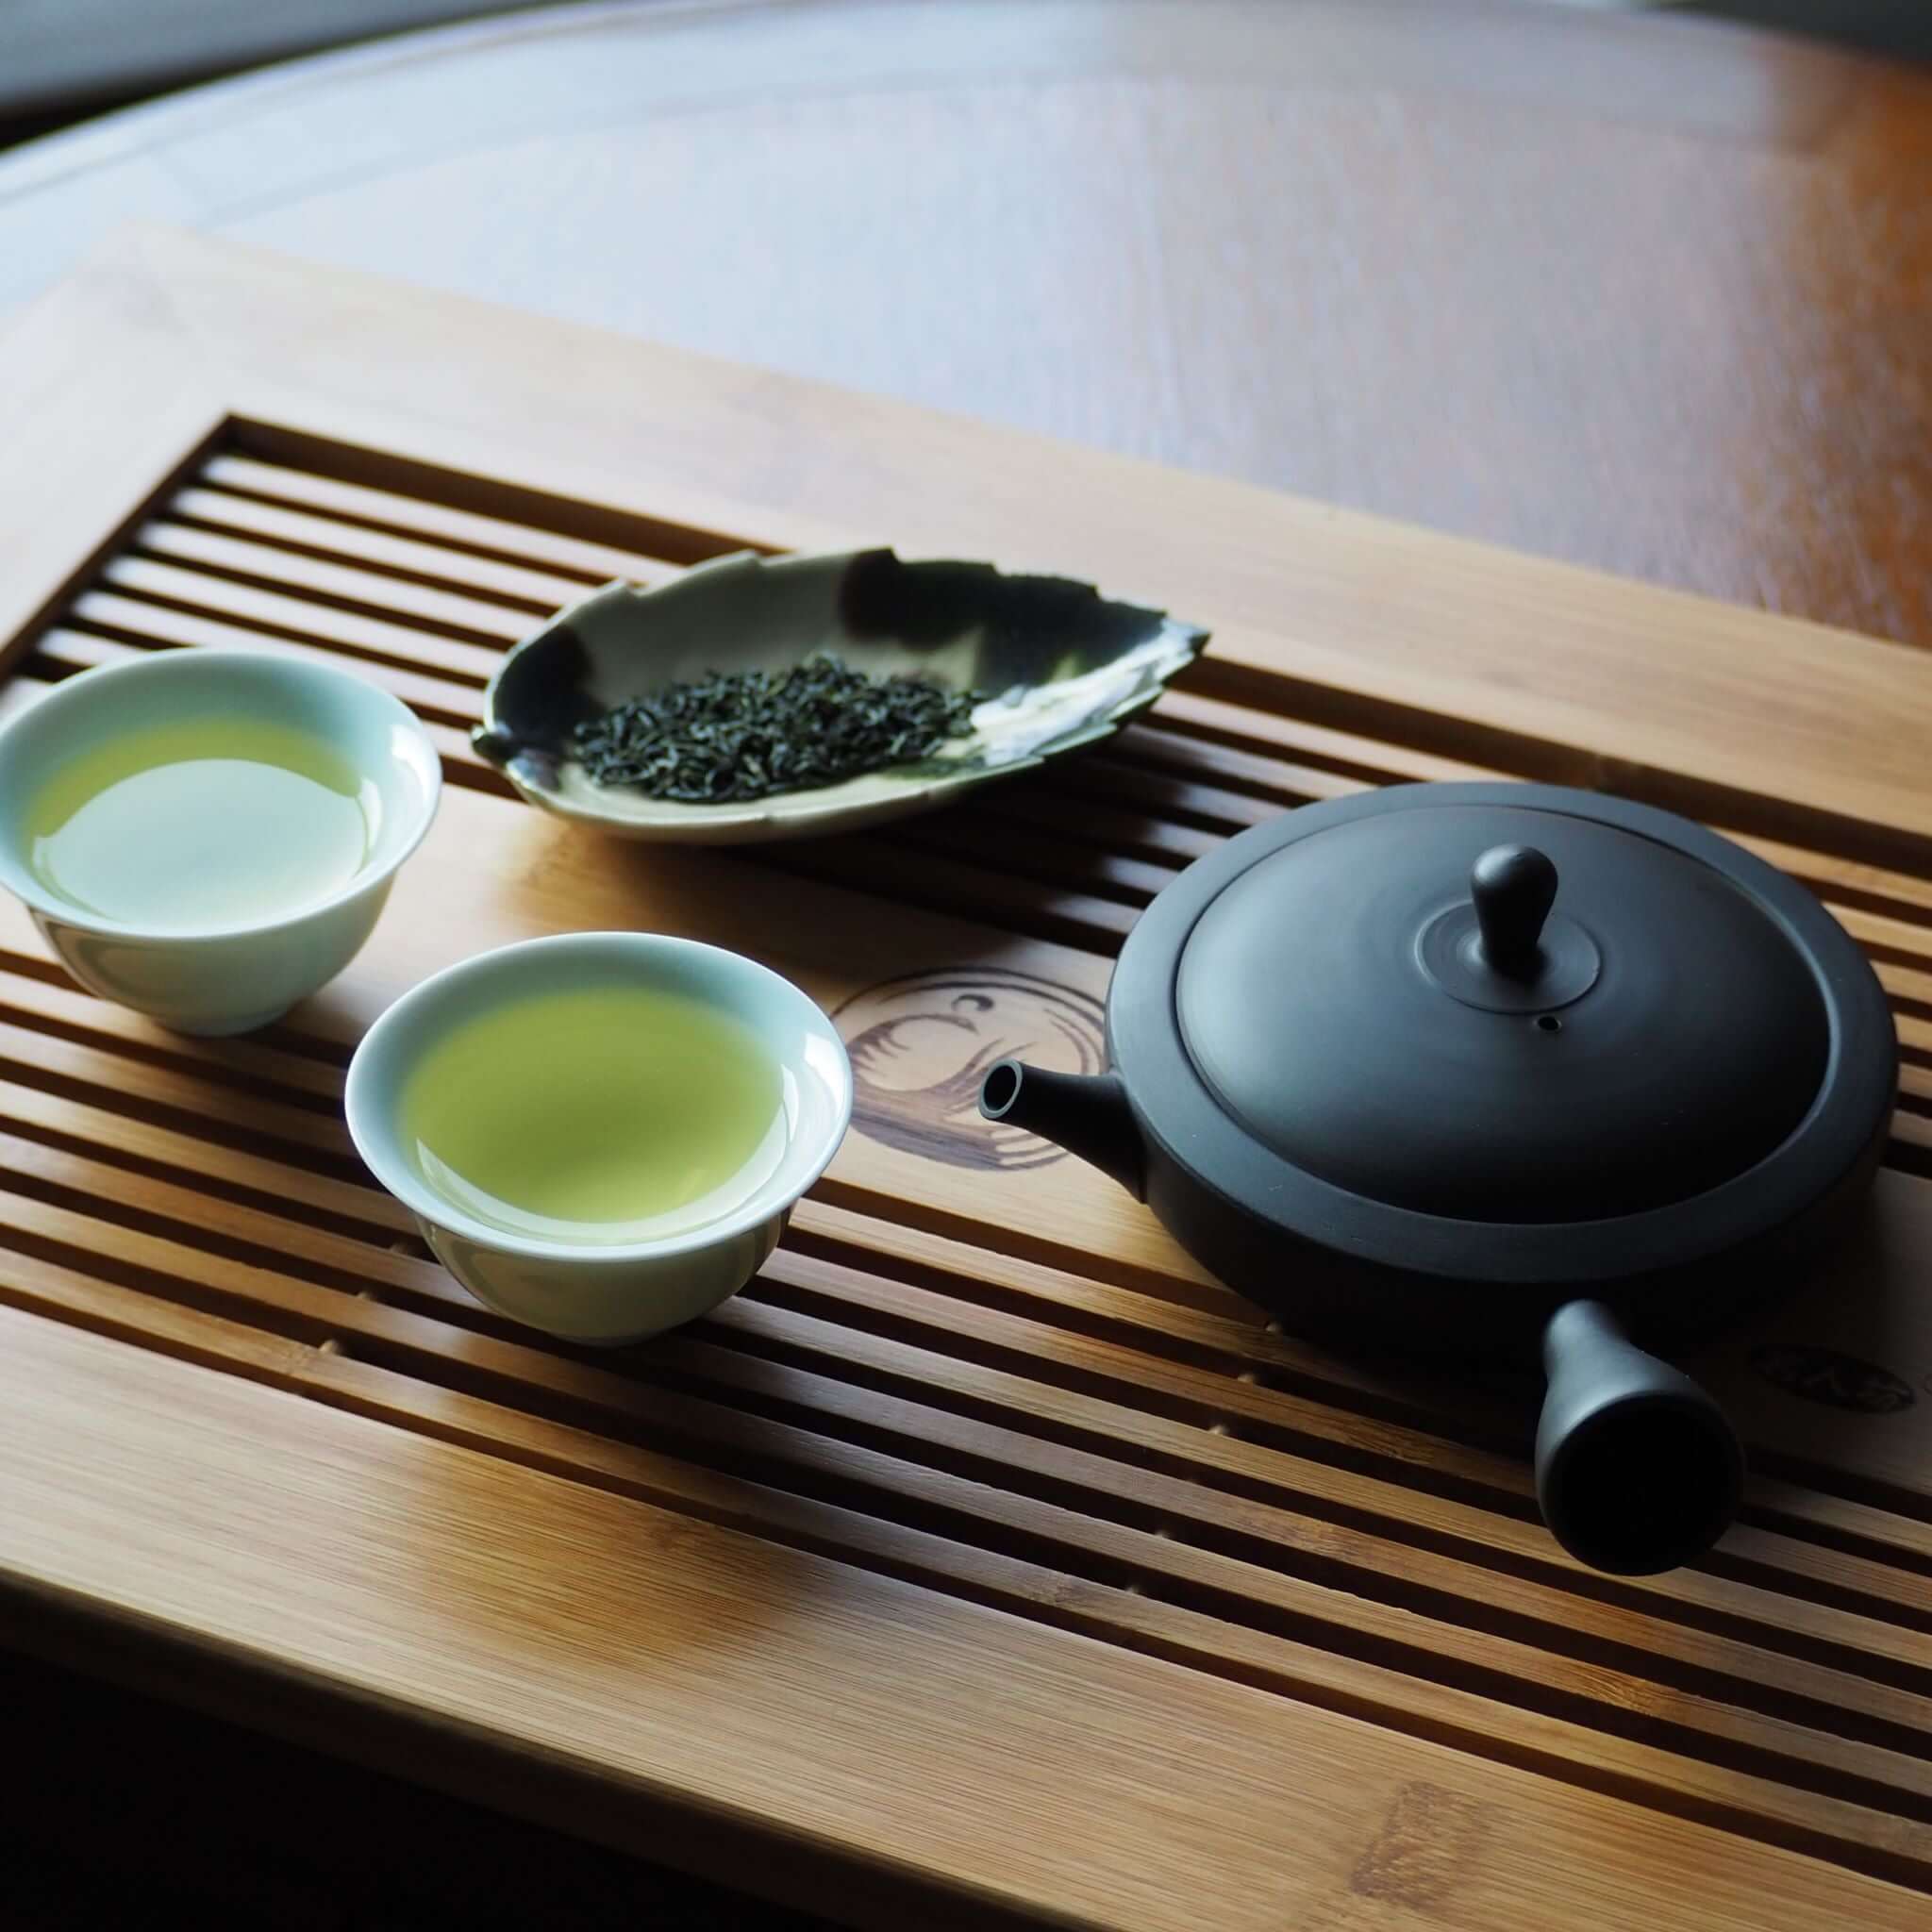 黒泥極平急須 煎茶・緑茶器 – 煎茶 中国茶 台湾茶向け 日本製急須/茶壺 